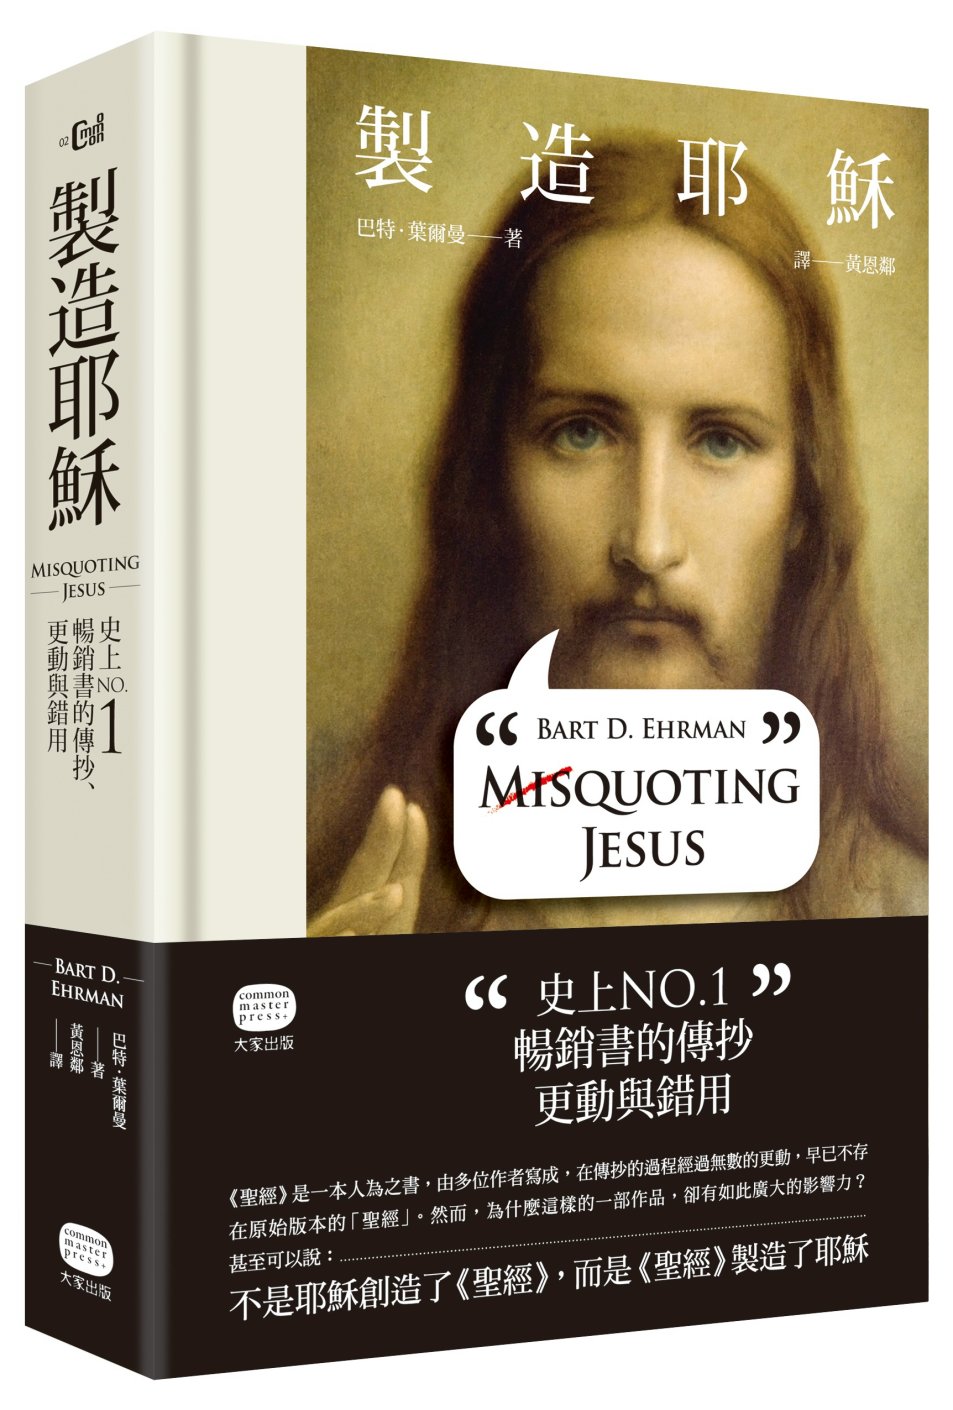 製造耶穌:史上NO.1暢銷書的傳抄.更動與錯用